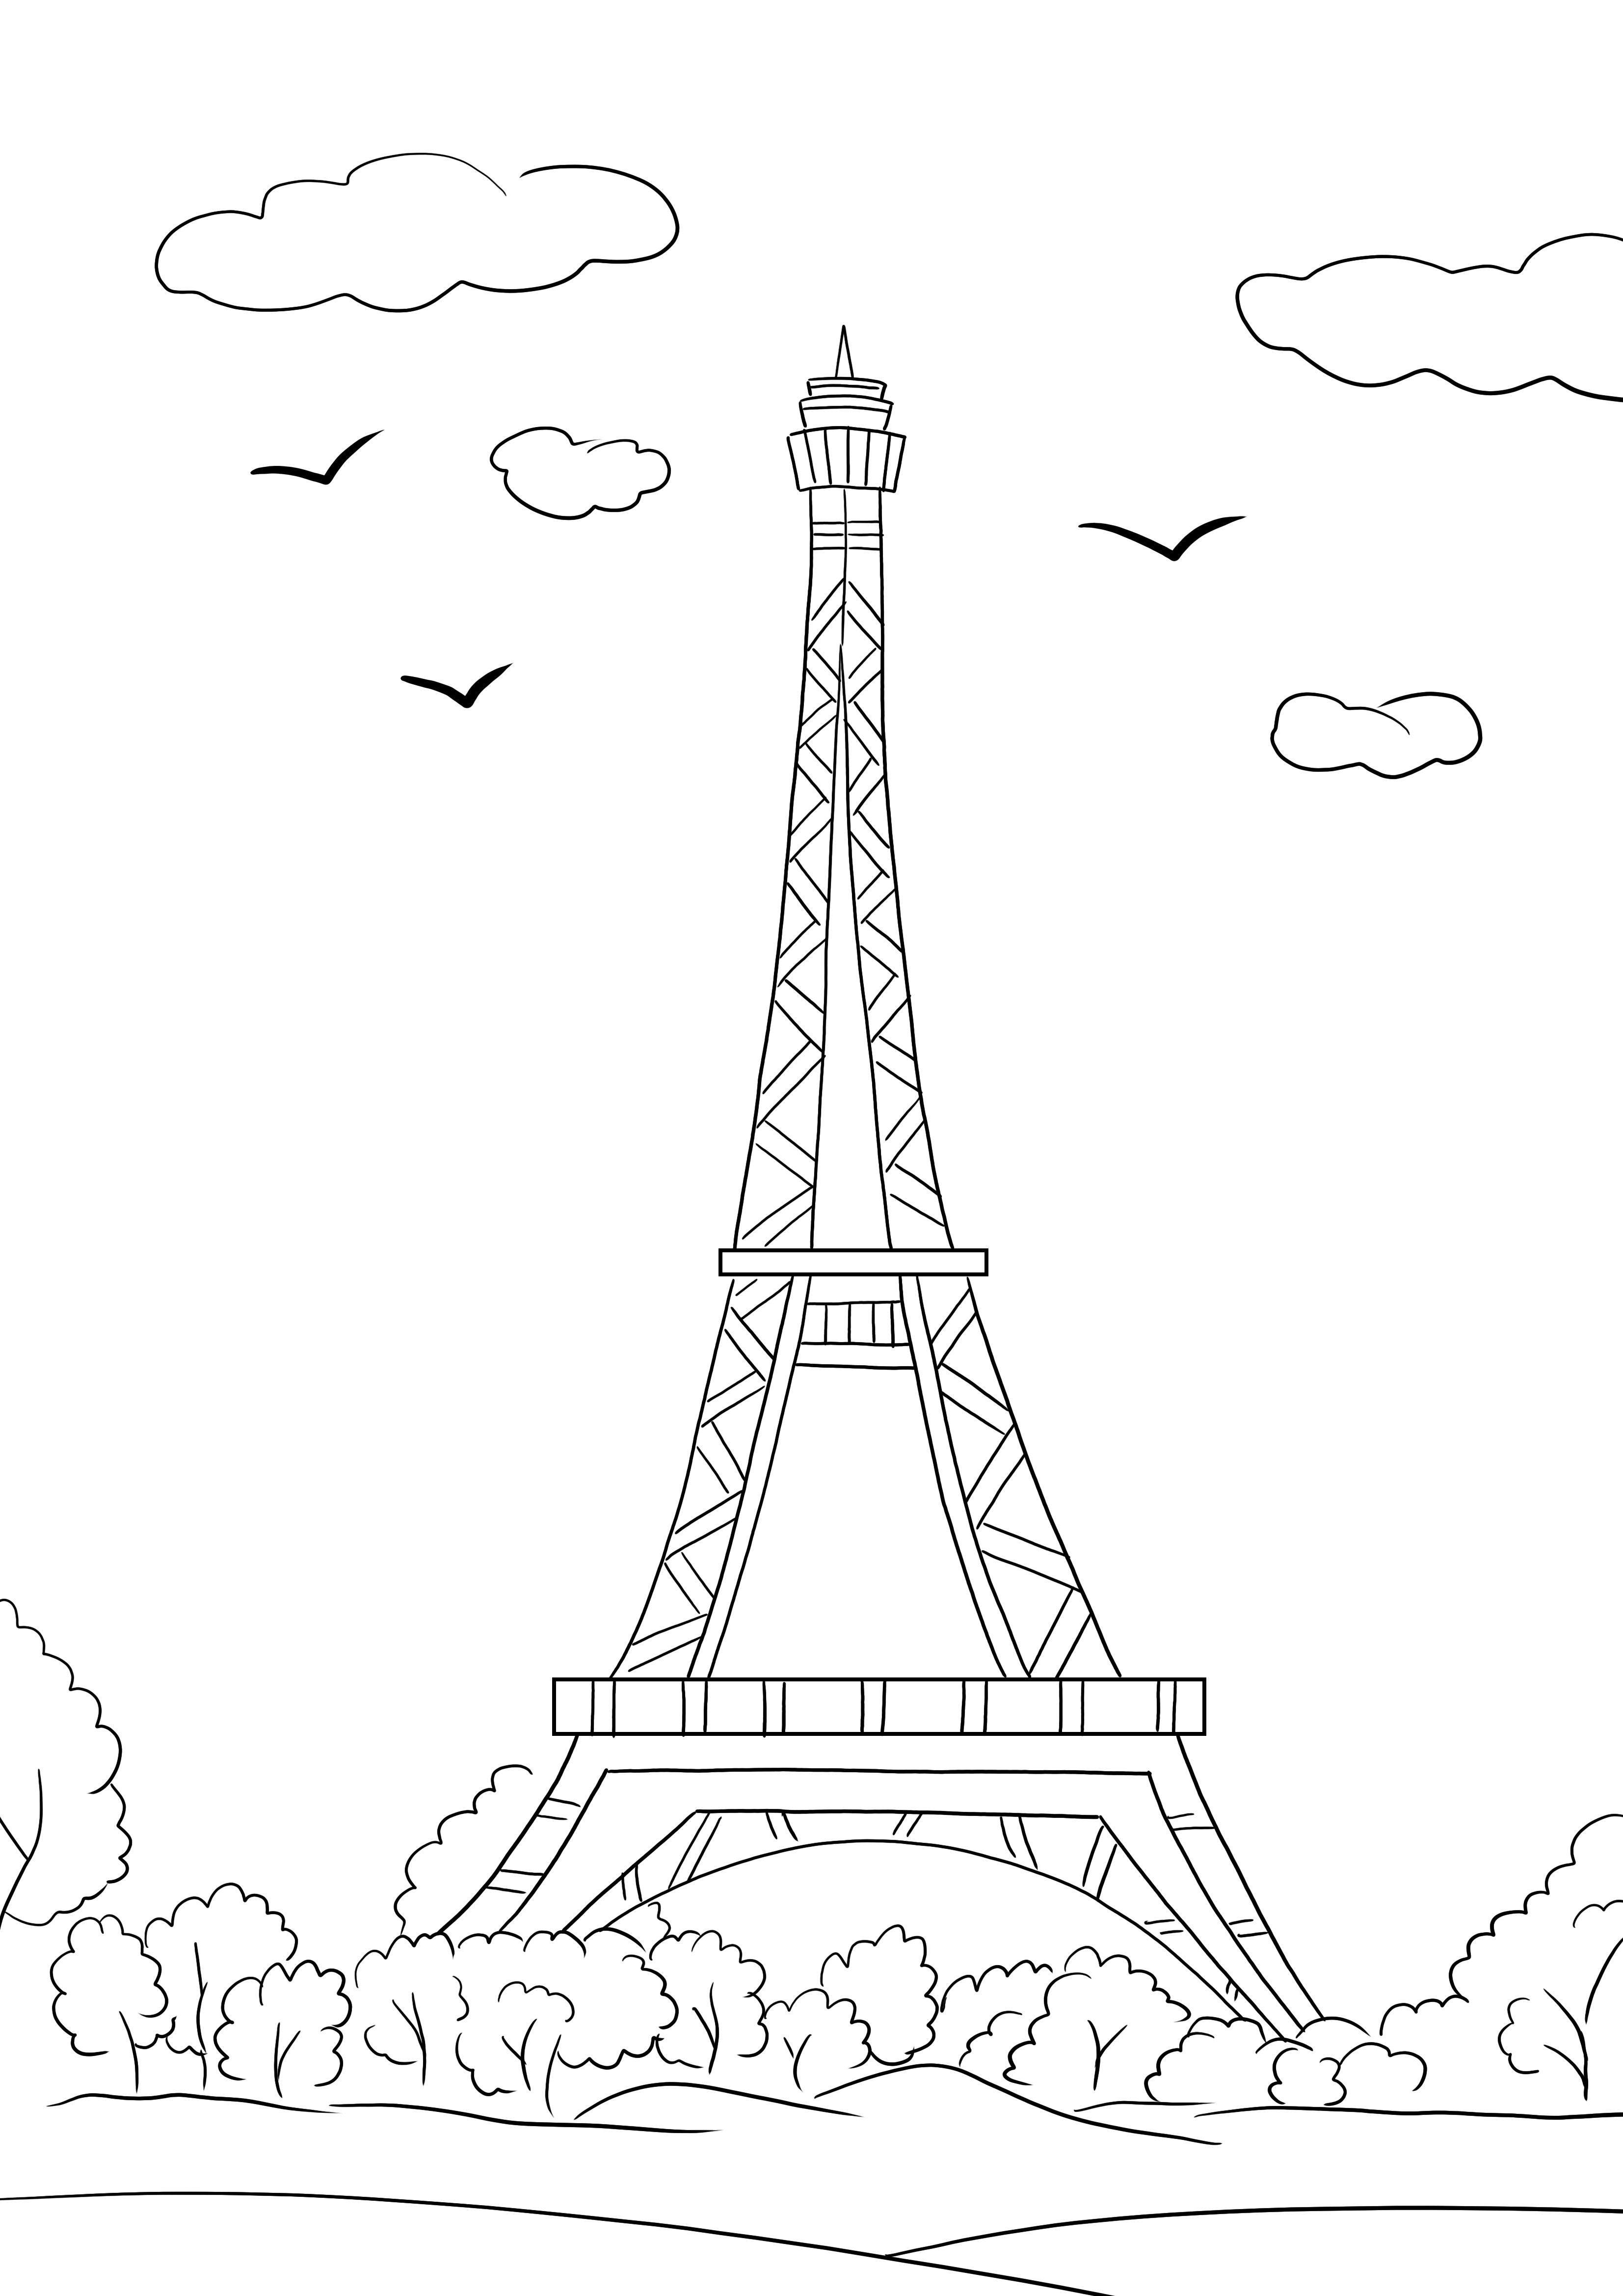 Menara Eiffel gratis untuk mencetak dan mewarnai halaman untuk mempelajari lebih lanjut tentang monumen terkenal